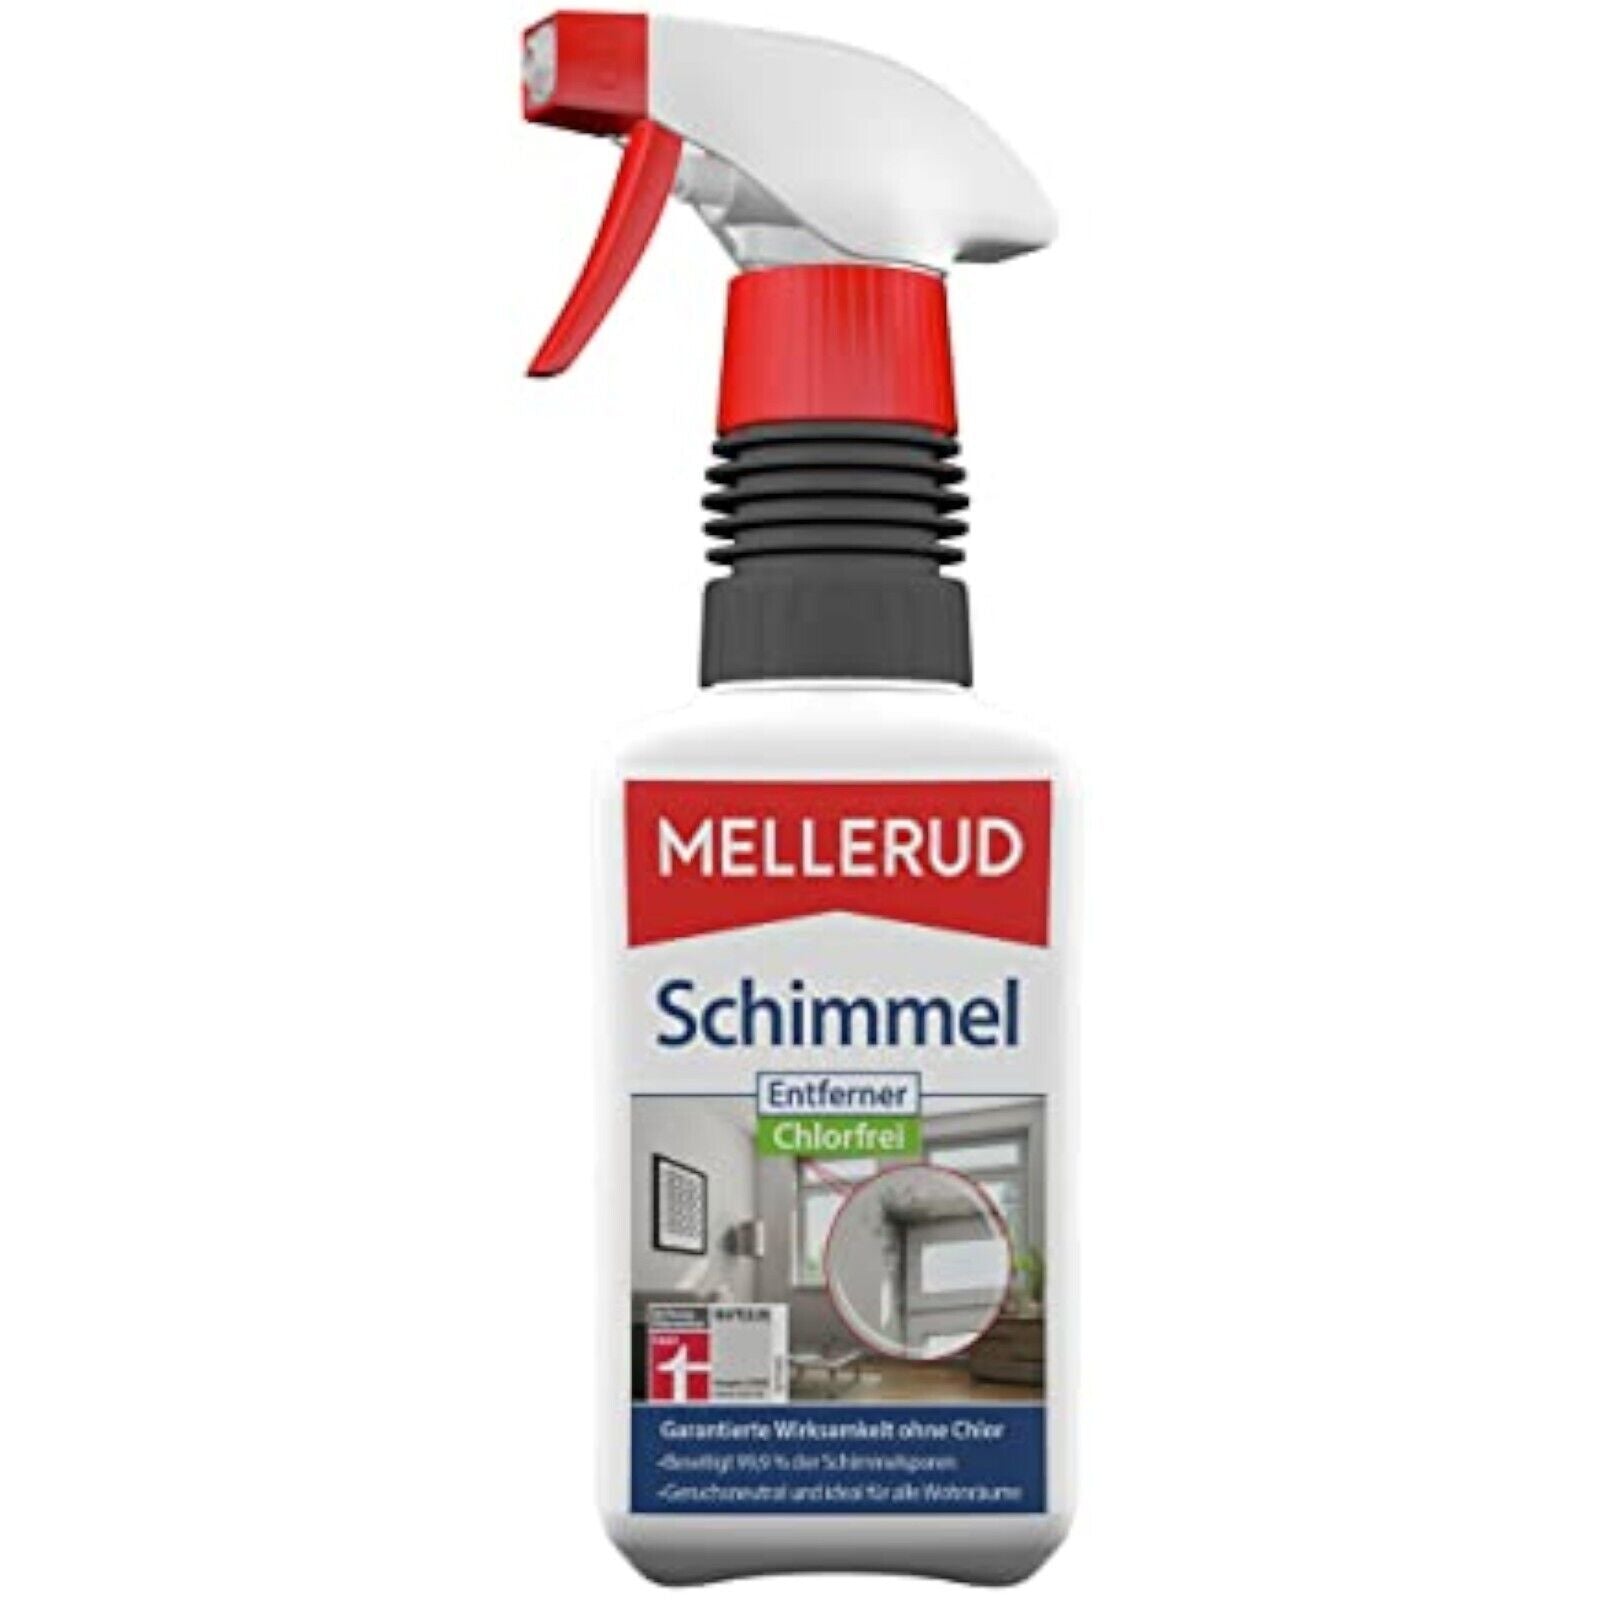 MELLERUD Schimmel Entferner Chlorfrei 0.5 L (chlorfrei)